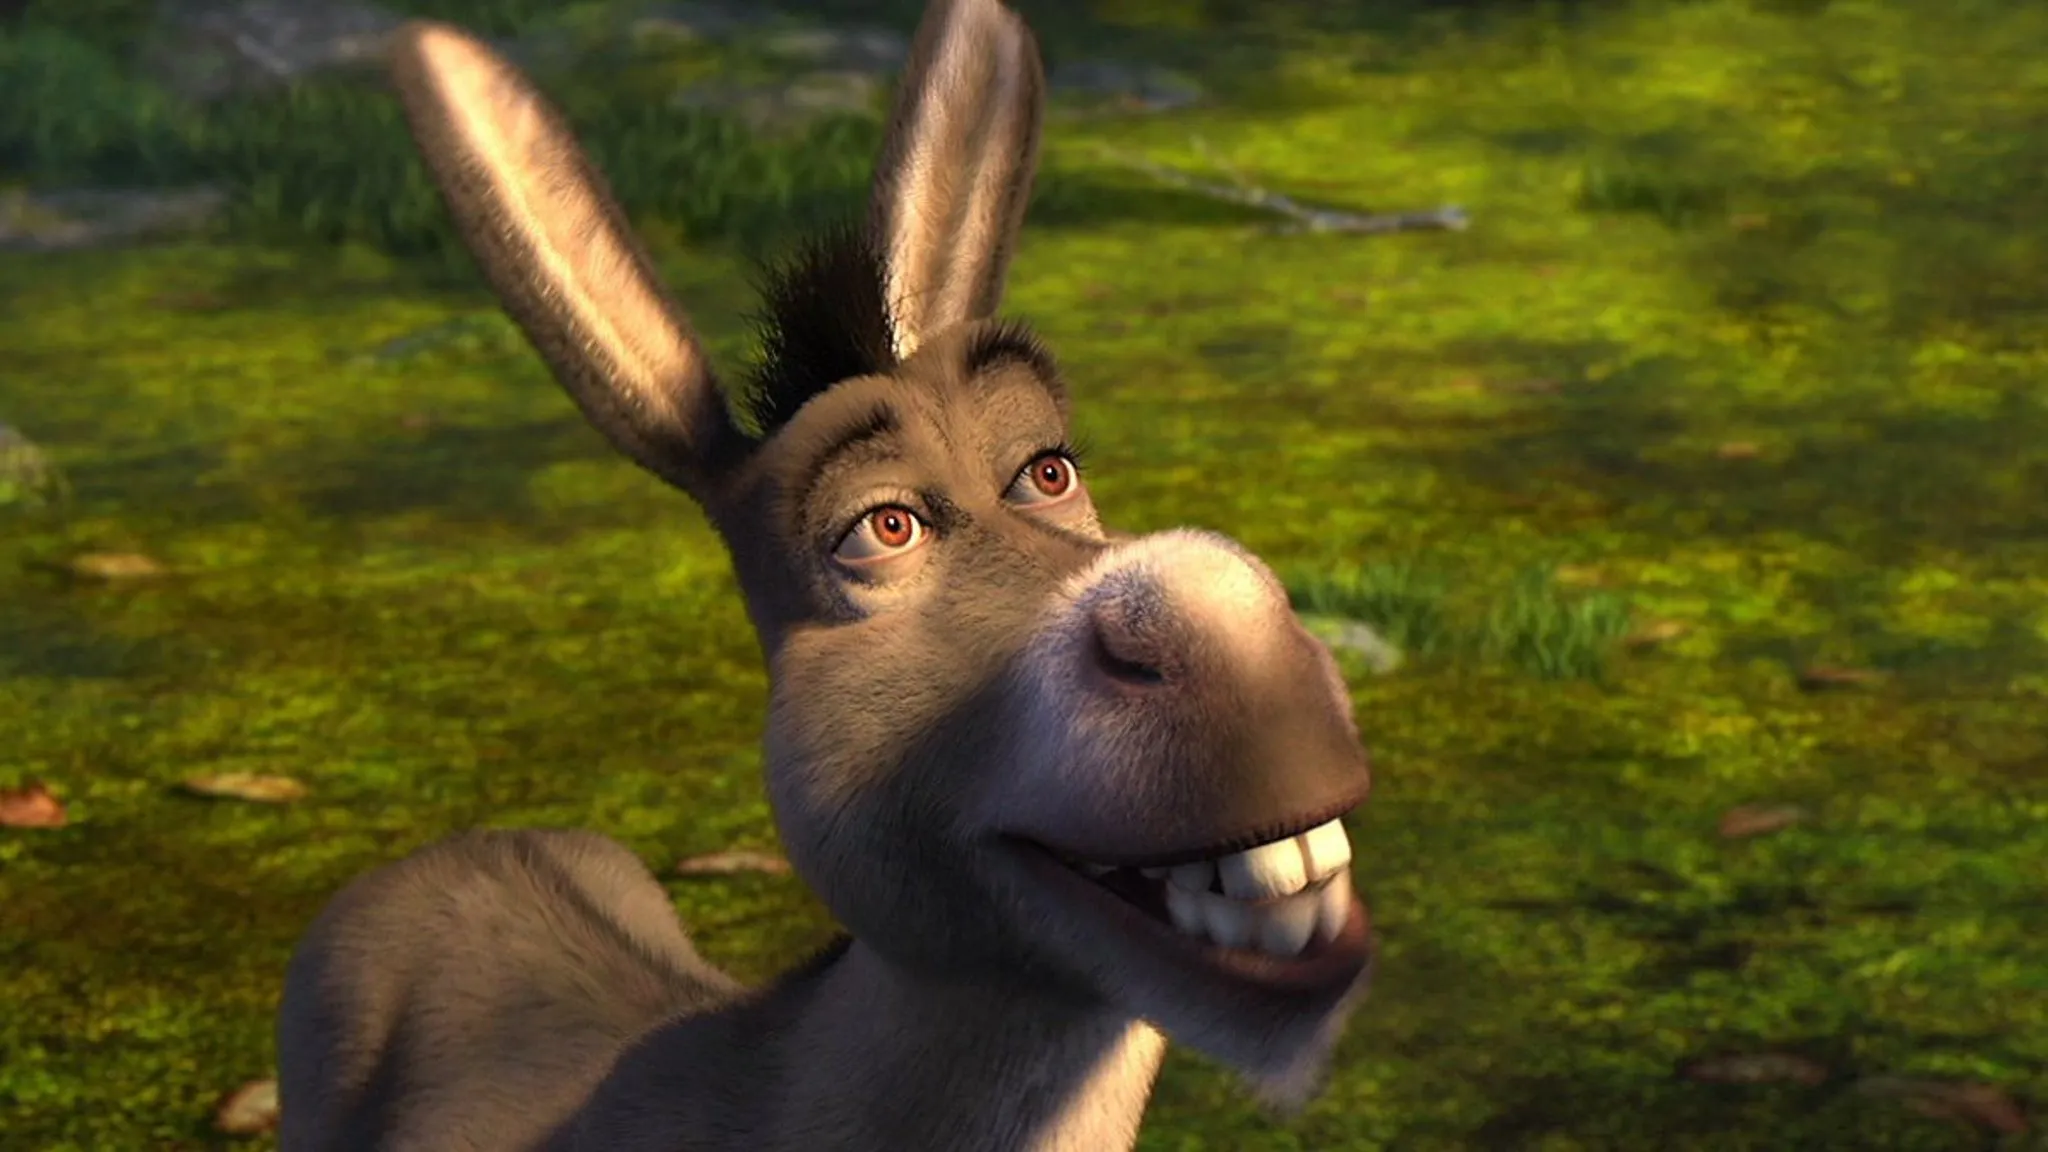 Donkey in Shrek.